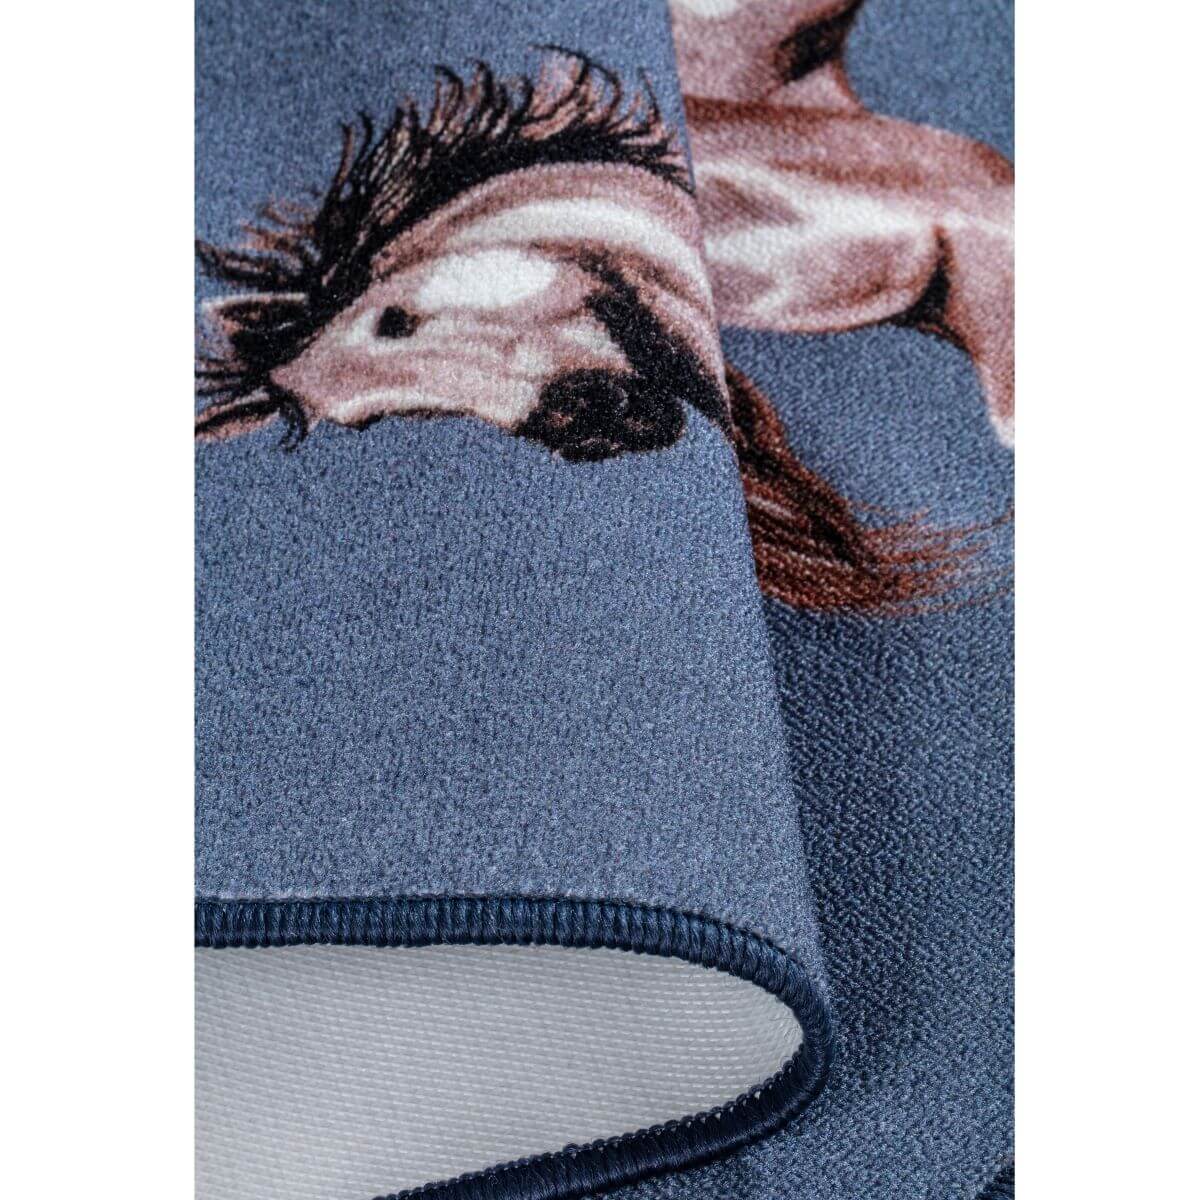 Dywanik w konie niebieski RATSU. Złożony niebieski dywanik młodzieżowy dla dziewczynki z koniem wymiar 50x80